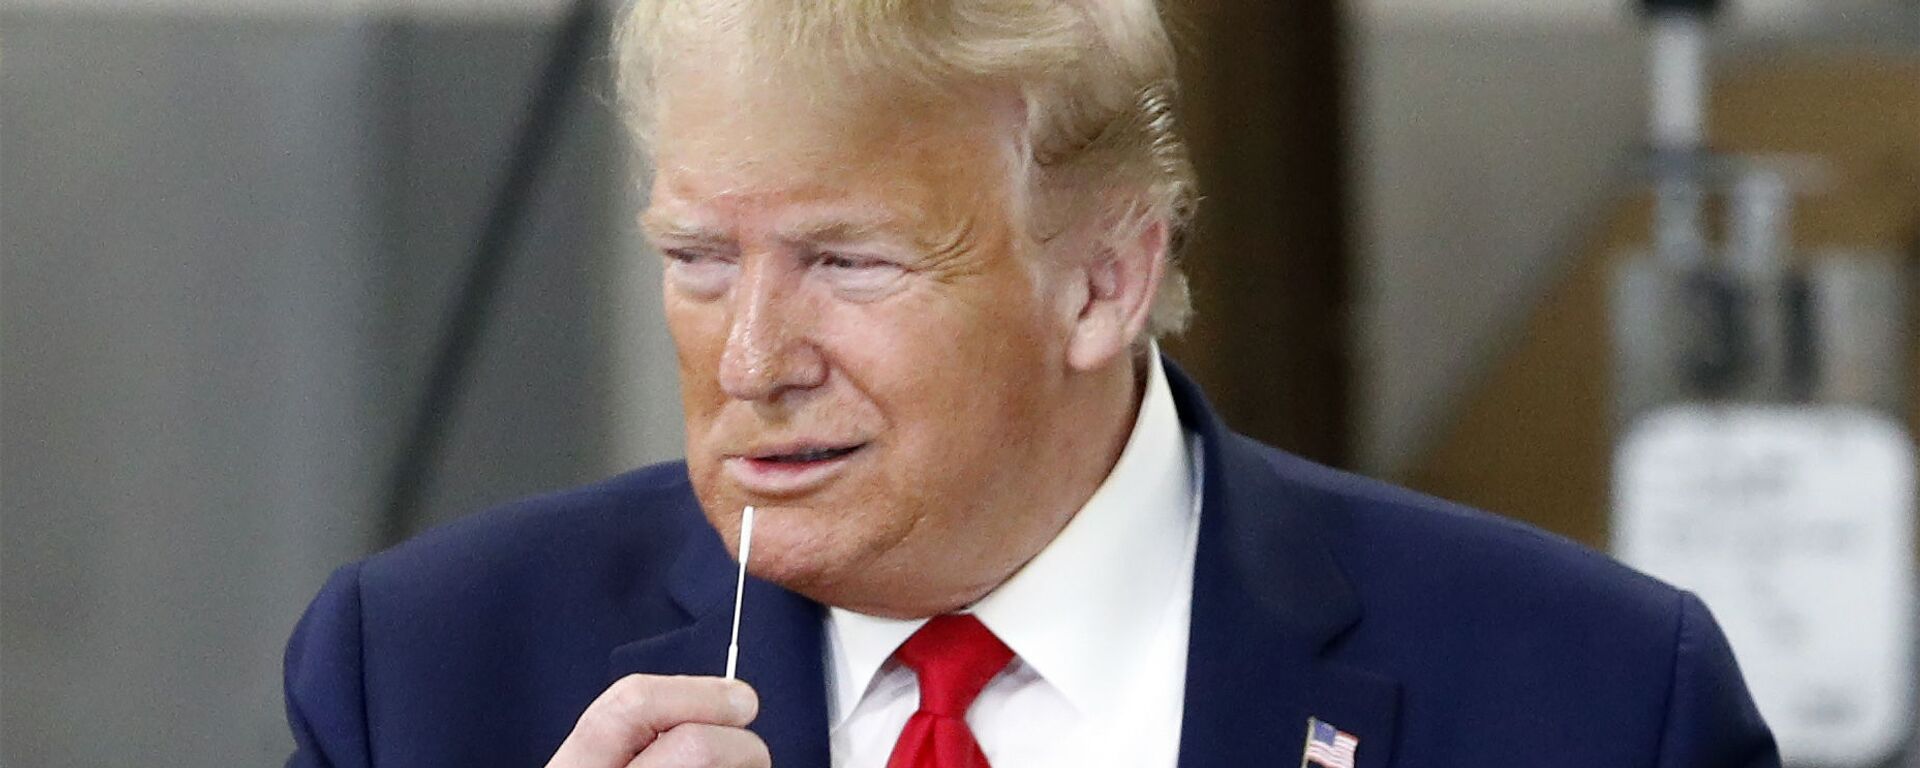 El presidente de EEUU, Donald Trump, se acerca a la boca un hisopo utilizado para los test de COVID-19 - Sputnik Mundo, 1920, 02.12.2021